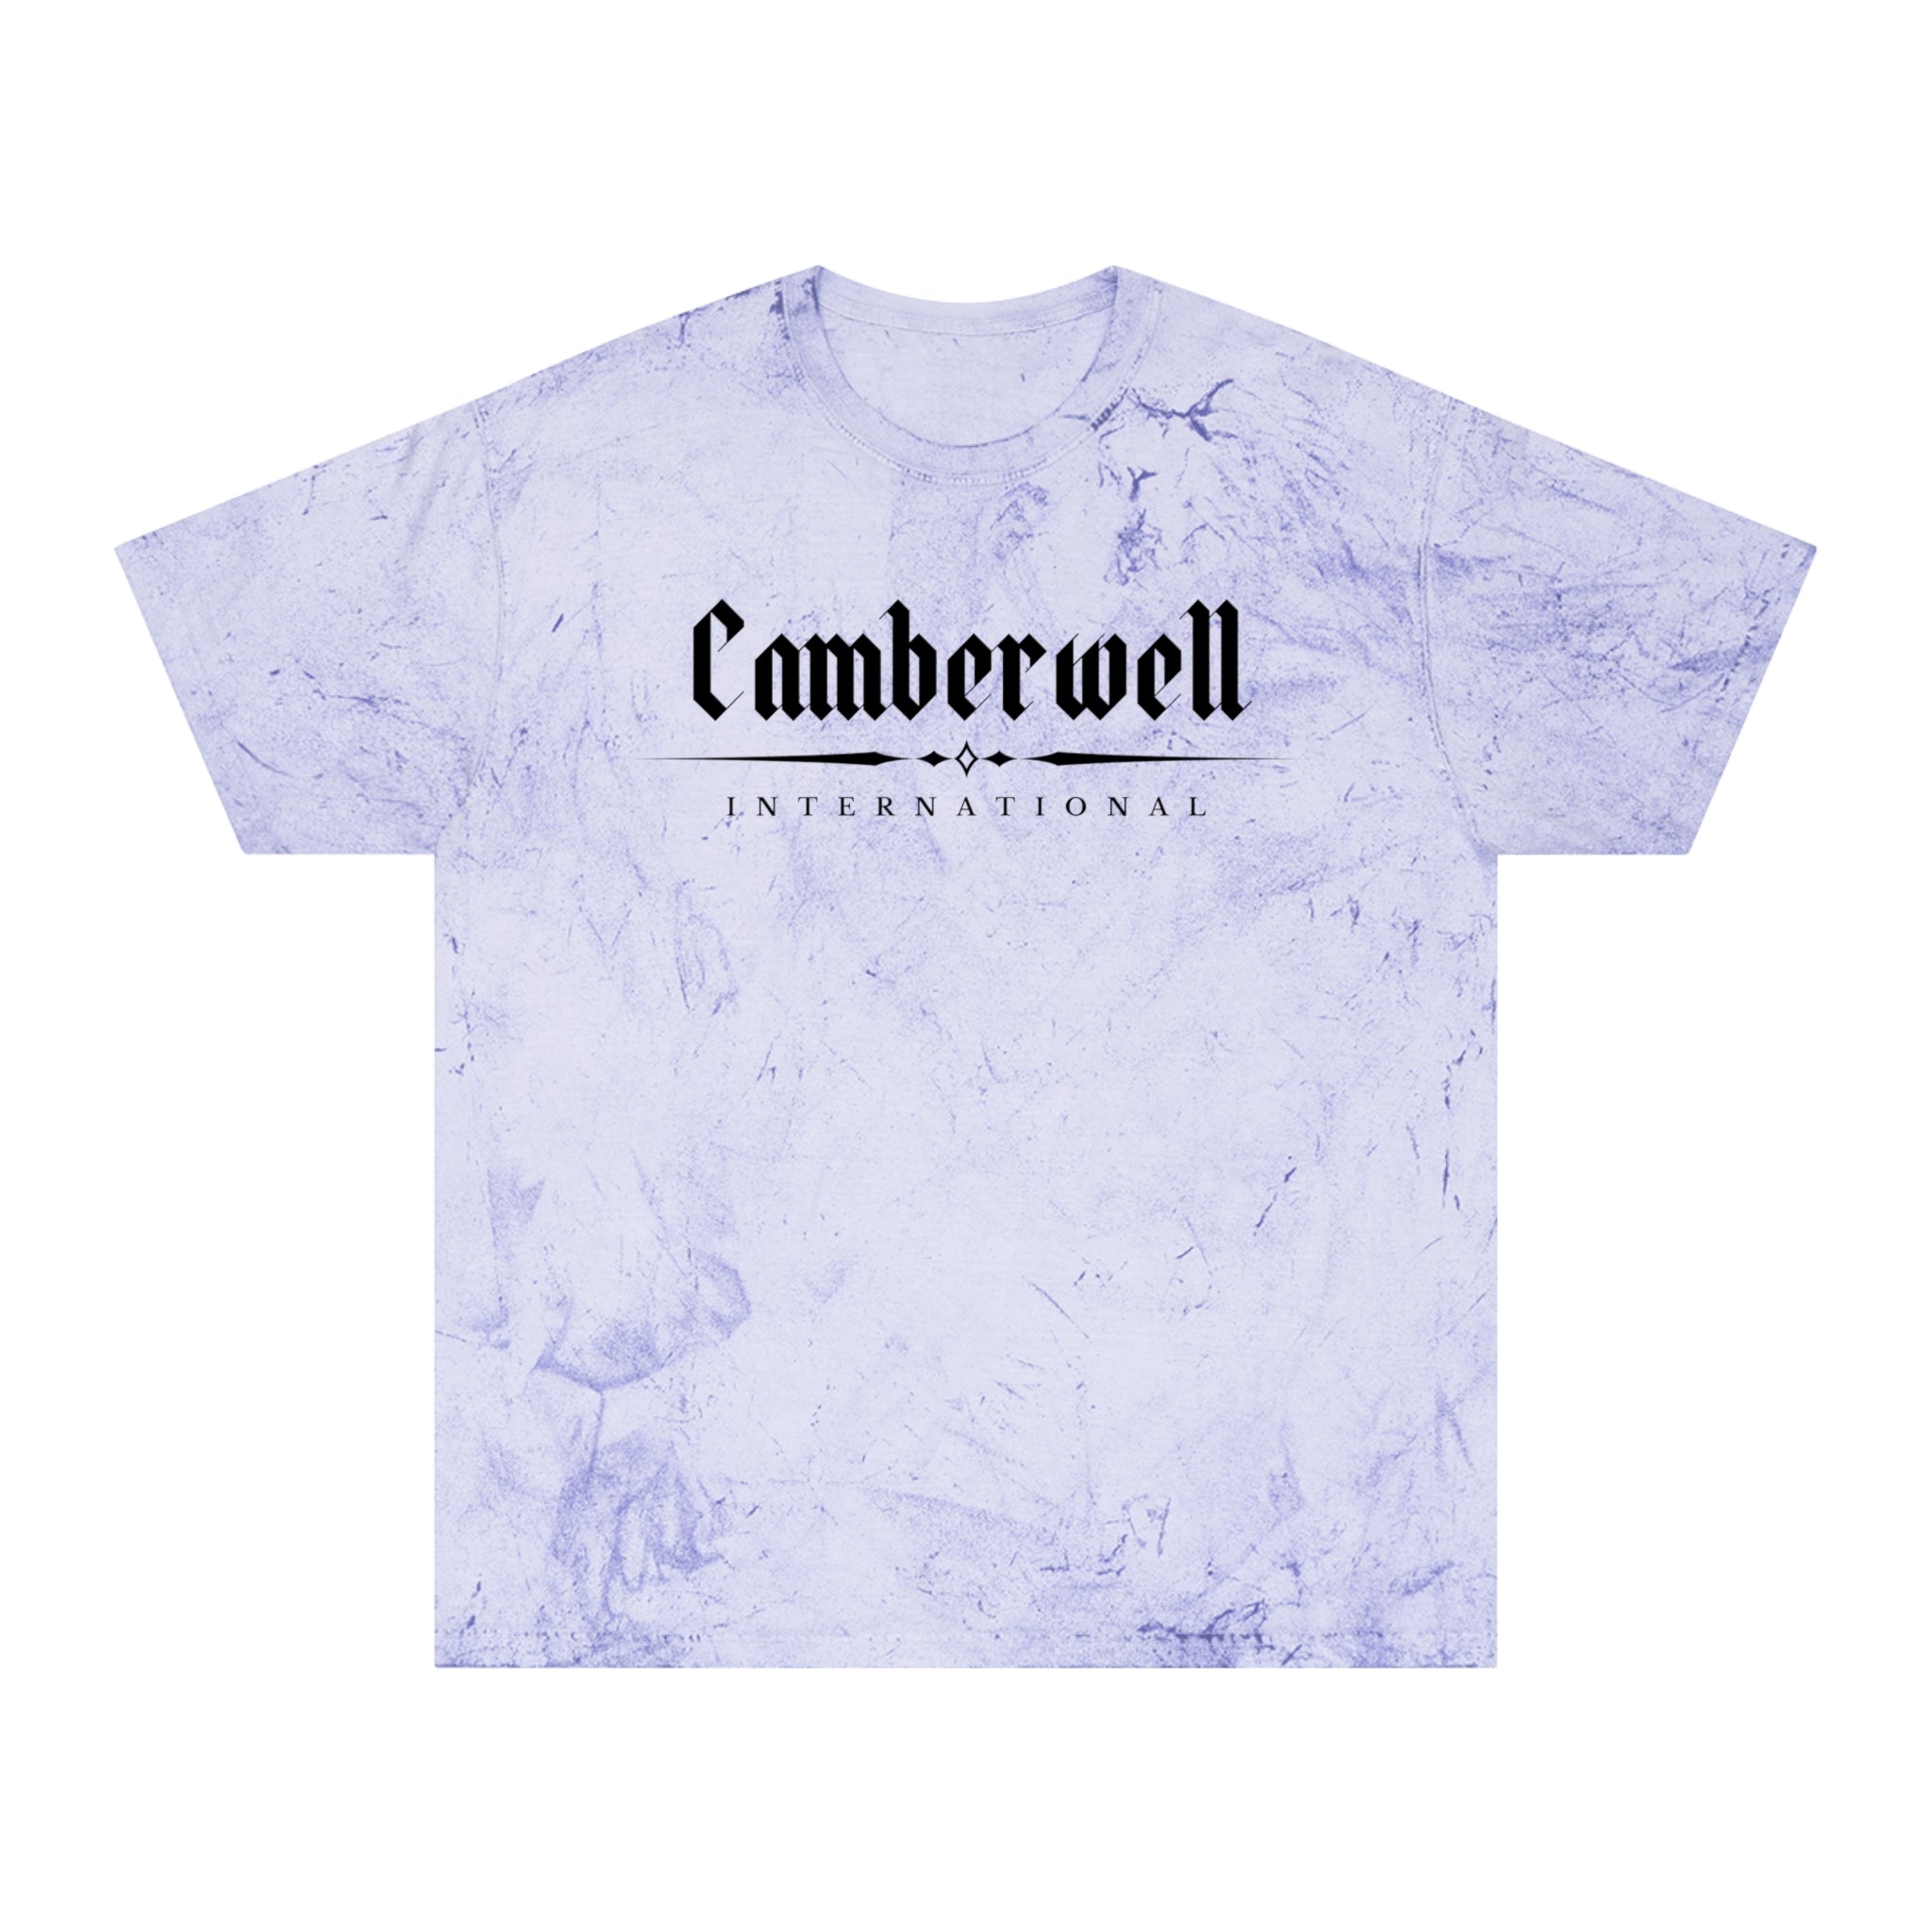 Camberwell Light Tie Die Tee